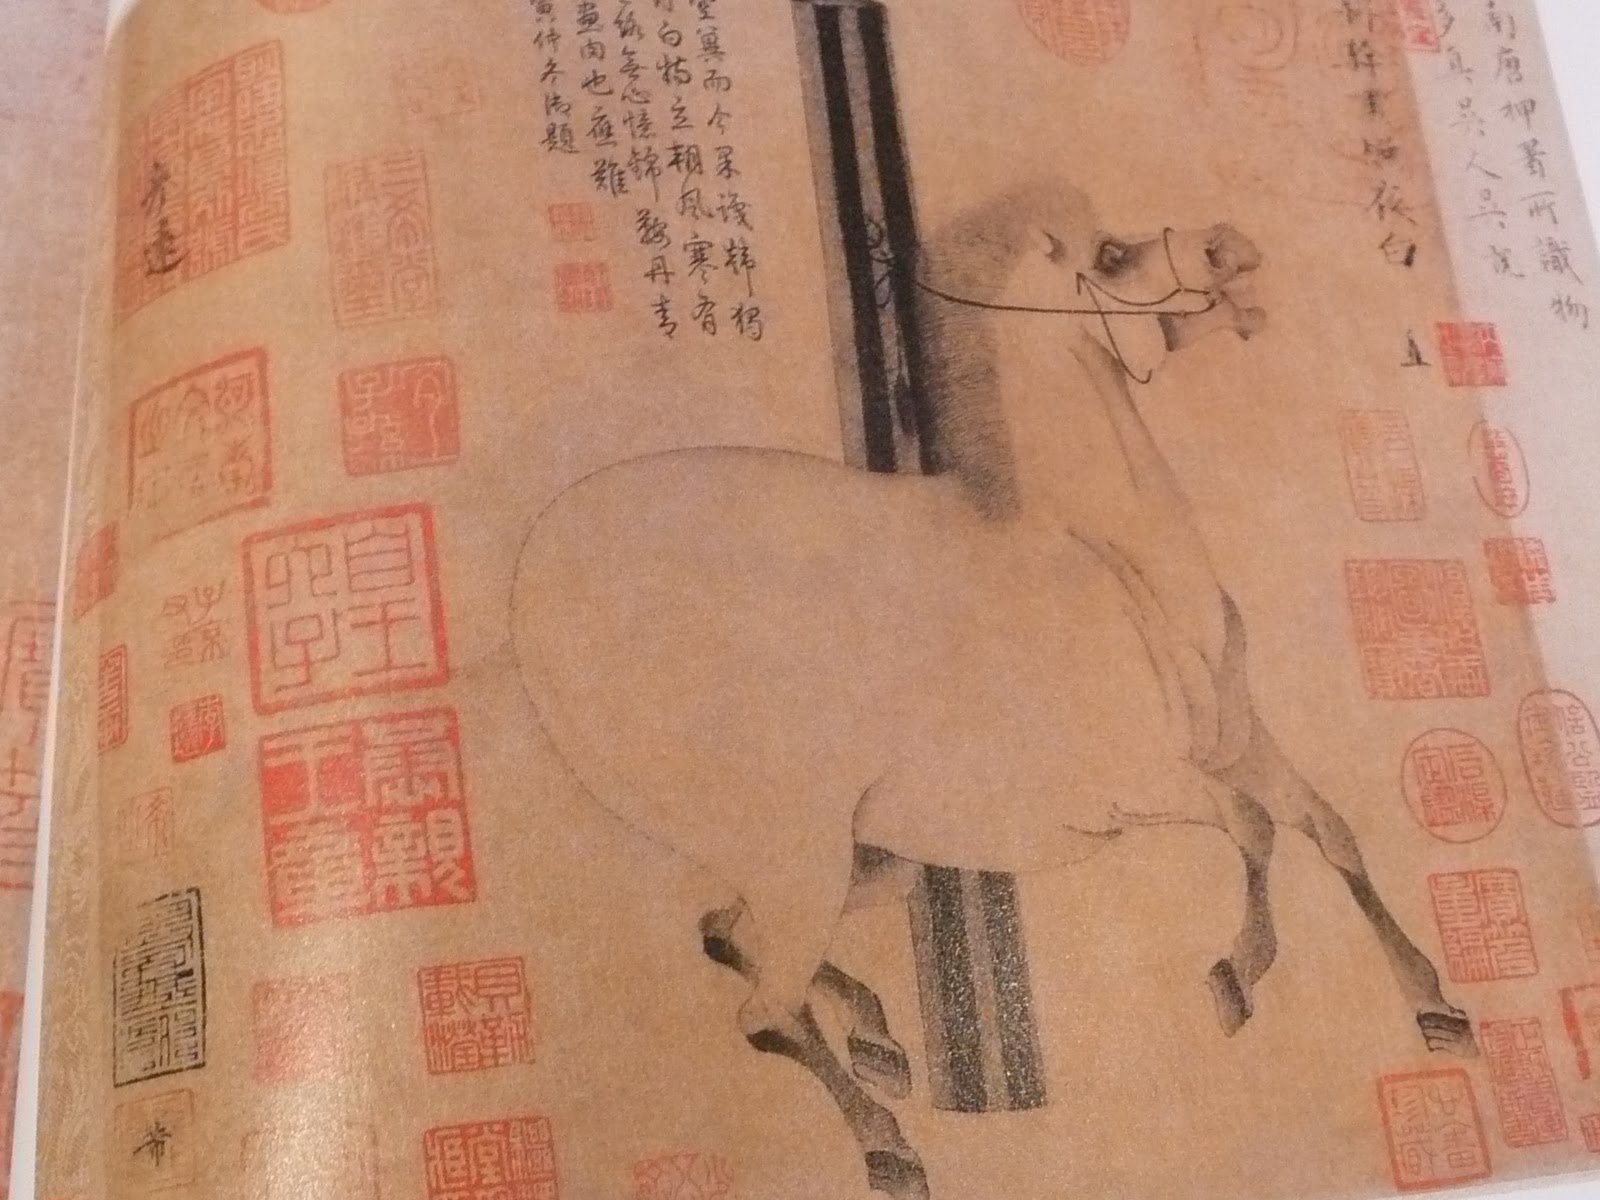 奈良倶楽部通信: 奈良国立博物館「平城遷都1300年記念 大遣唐使展」